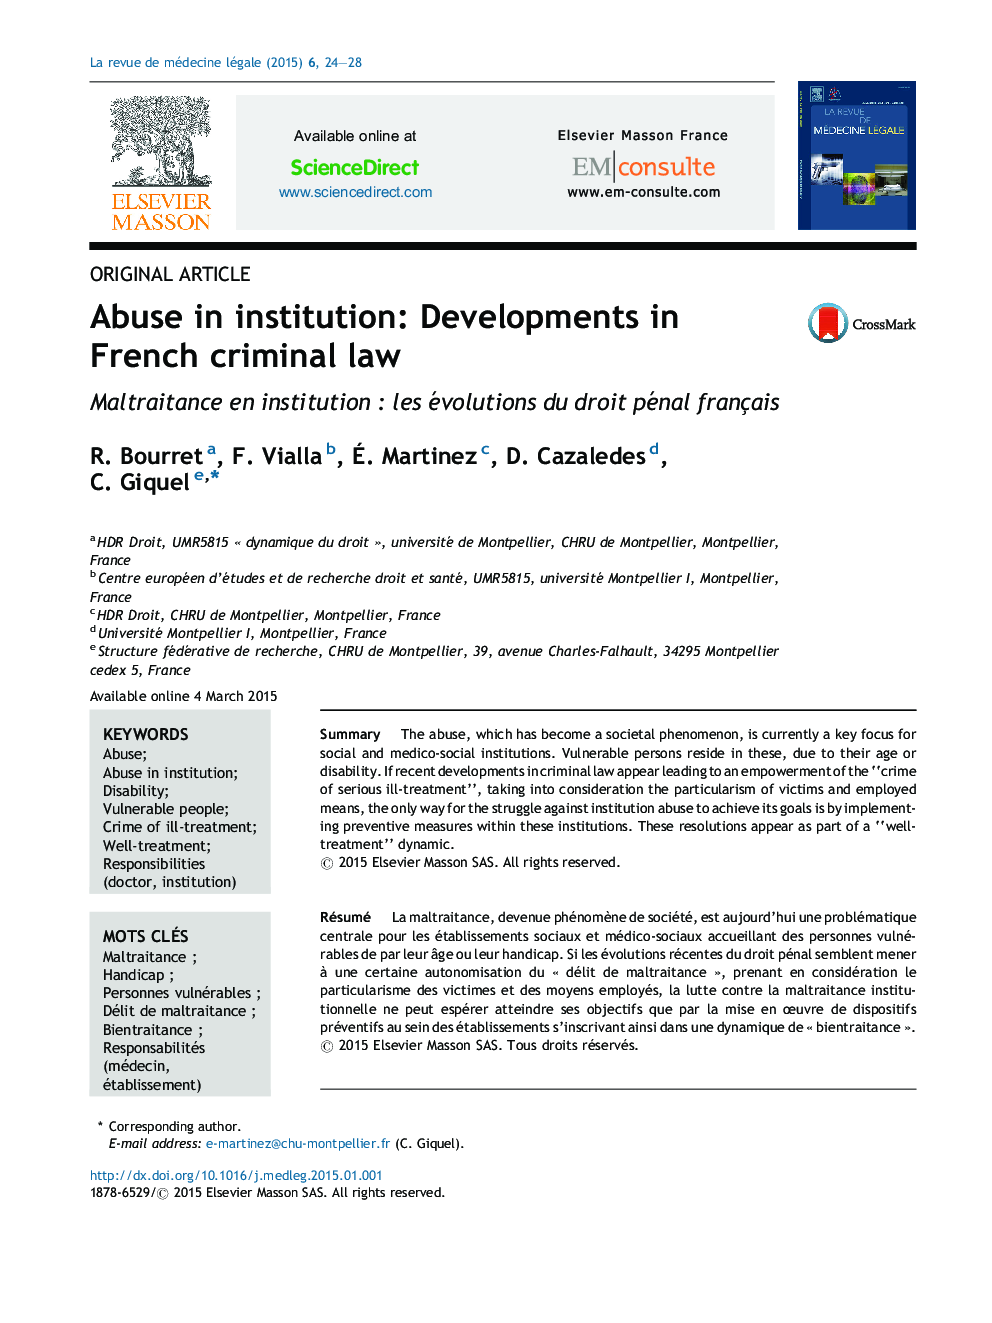 سوء استفاده در موسسه: تحولات در قانون کیفری فرانسه 